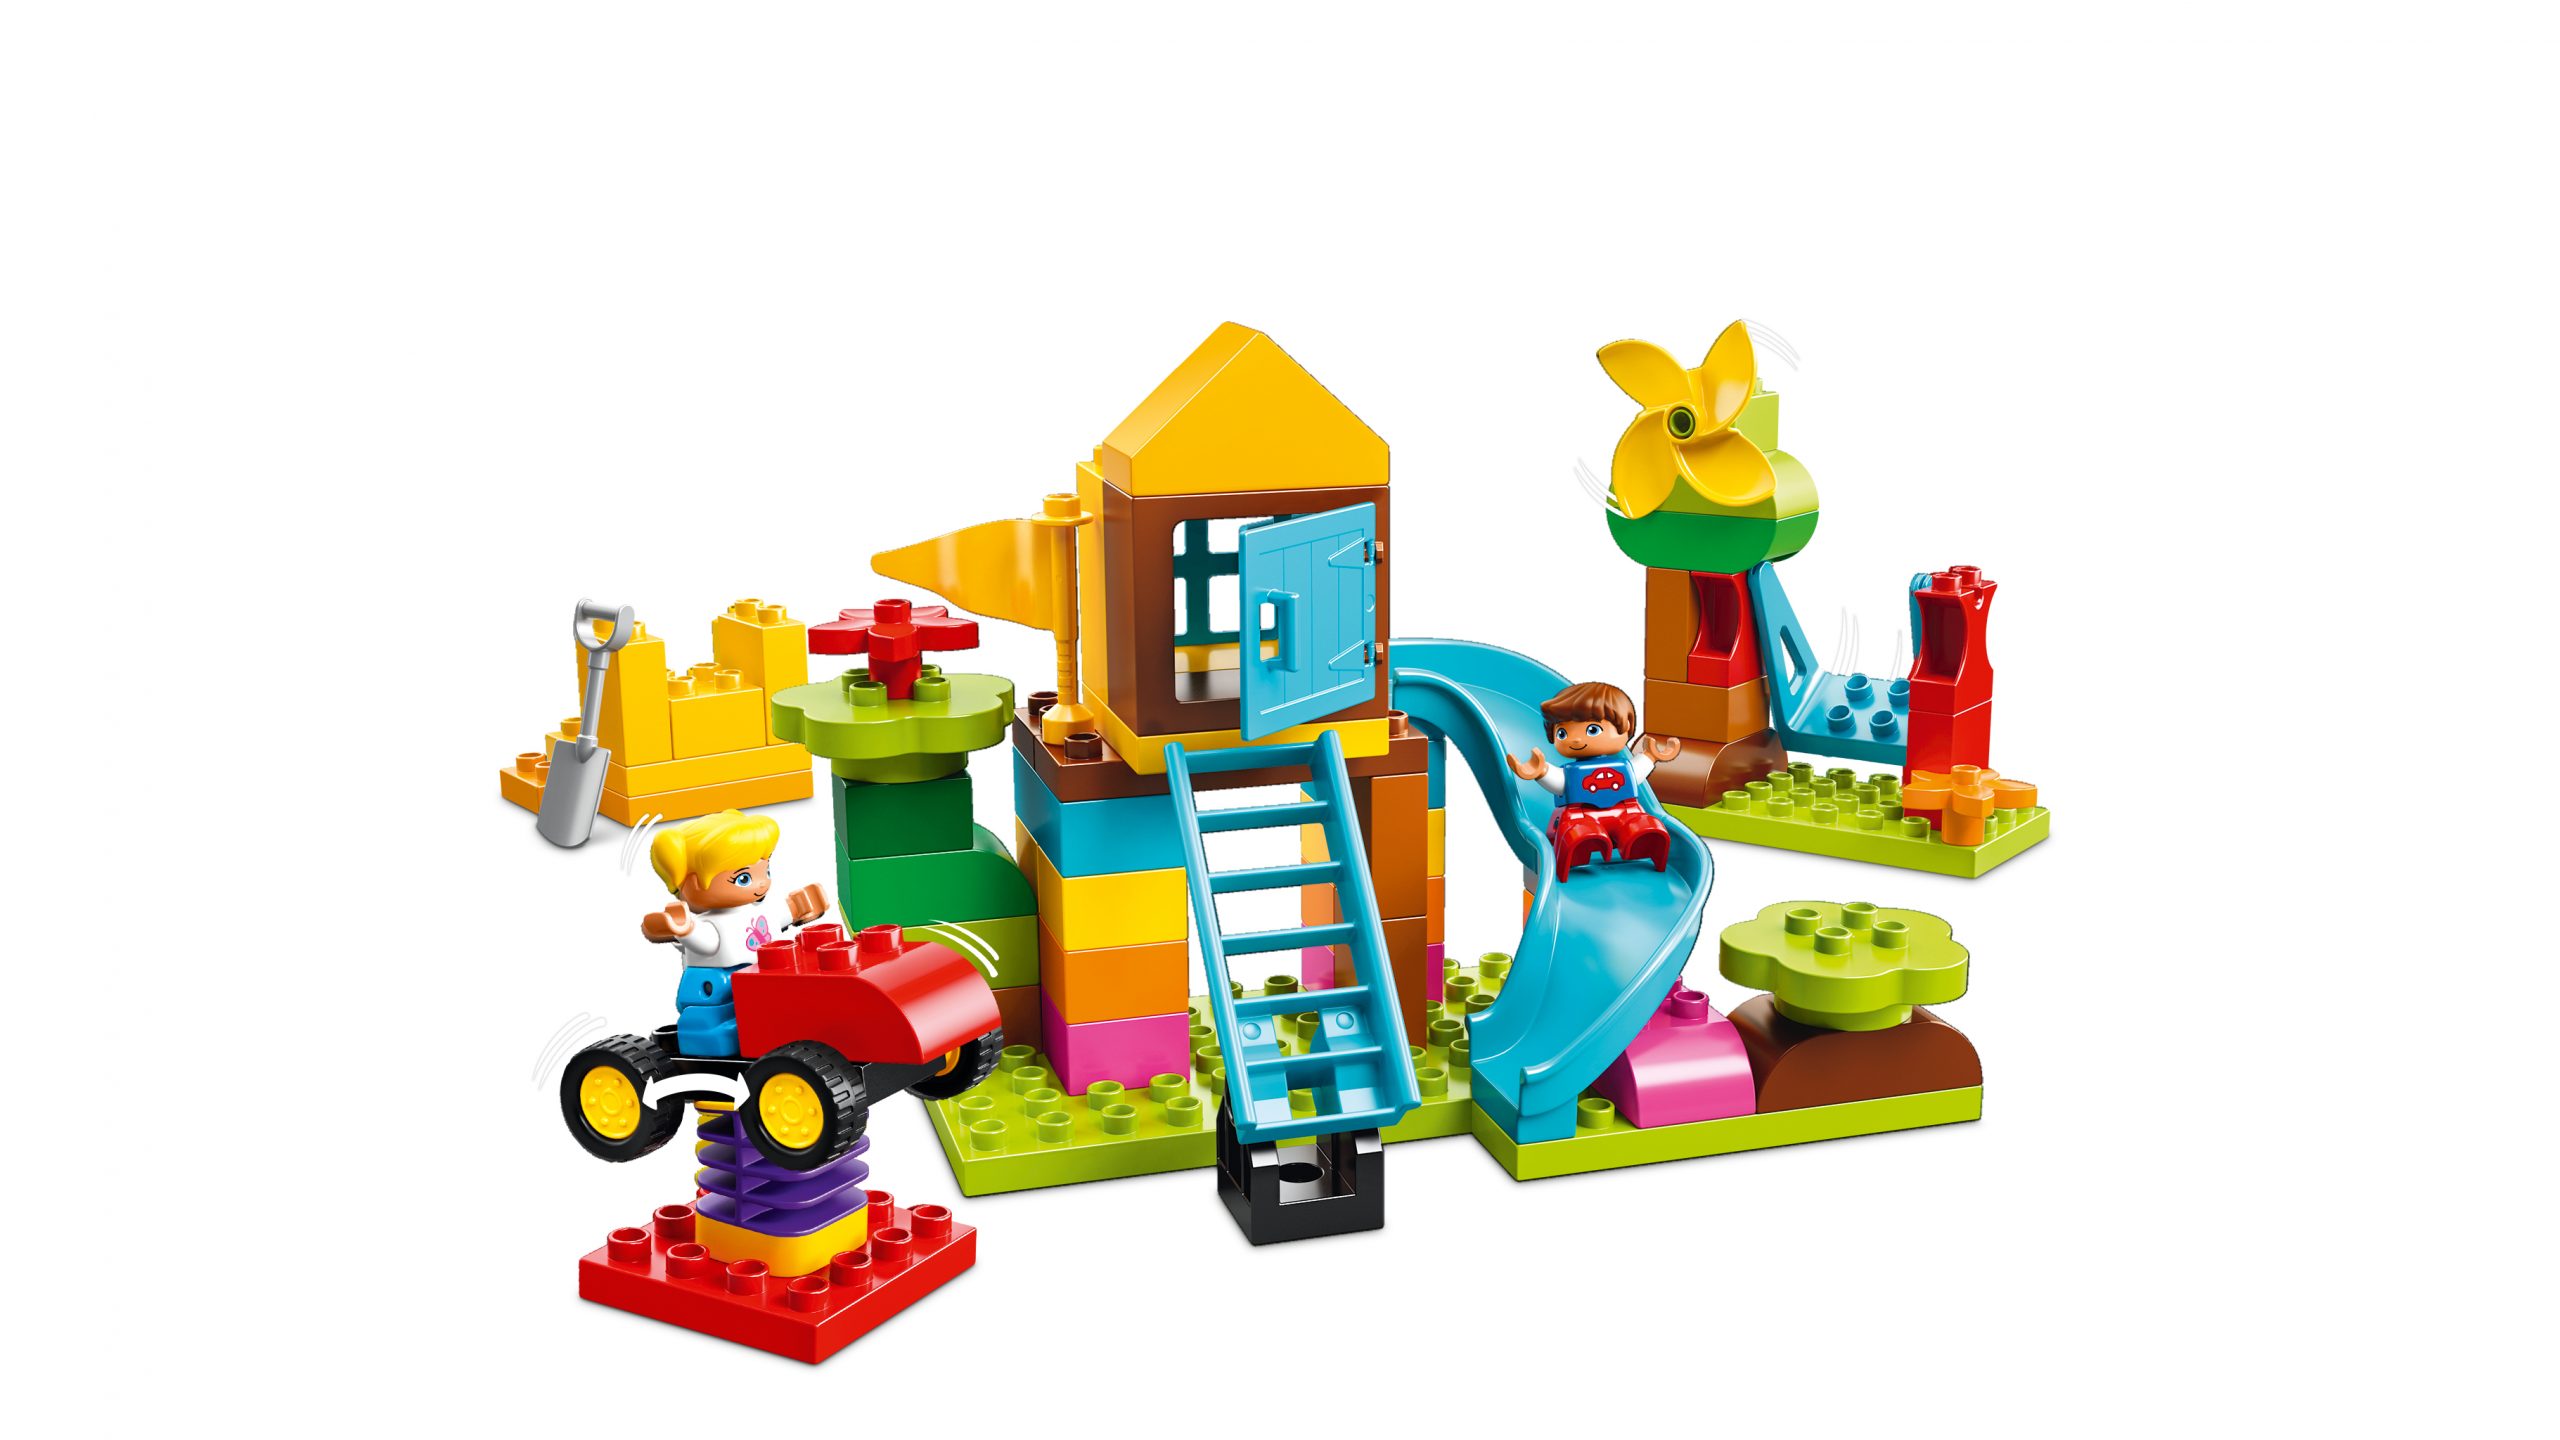 spek stam geef de bloem water Lego Duplo 10864 Grote Speeltuin - Opbergdoos - Welpie Toys Heerlen